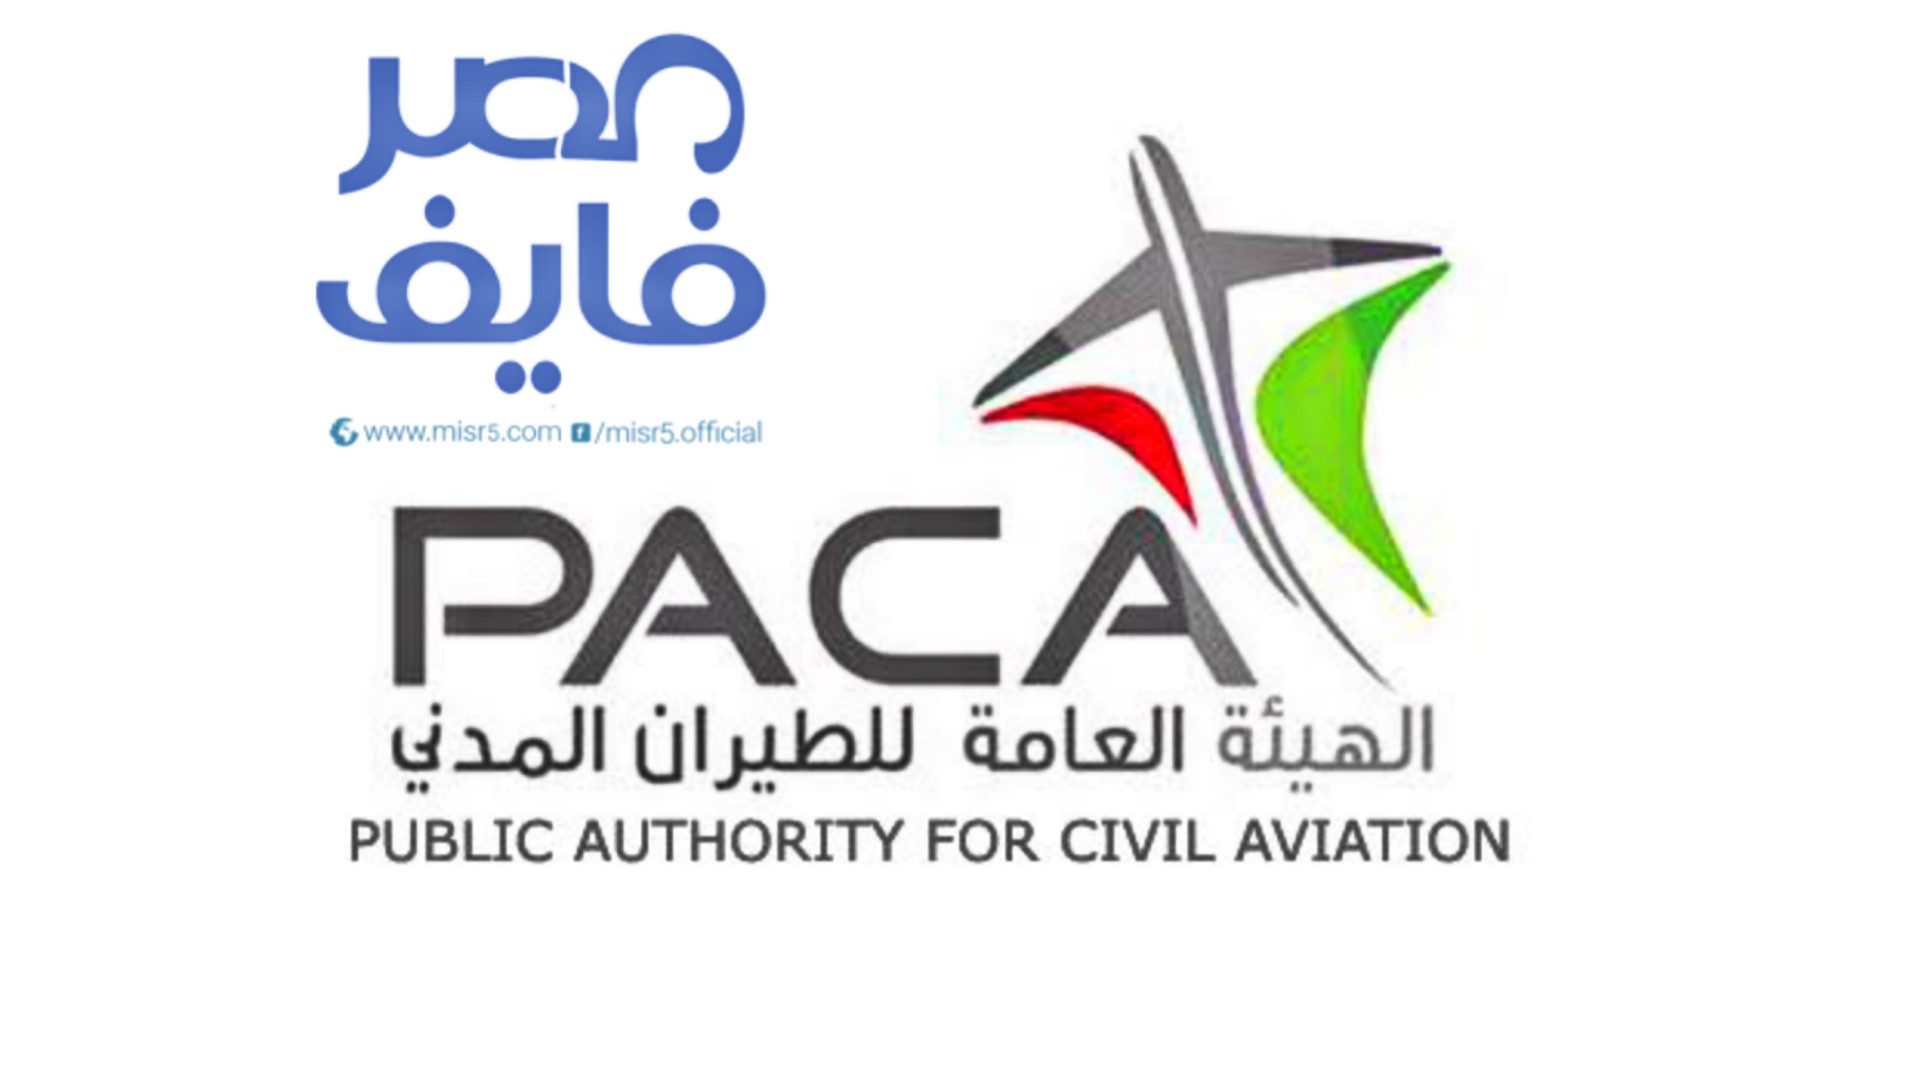 المدني للطيران الهيئة العامة الهيئة العامة